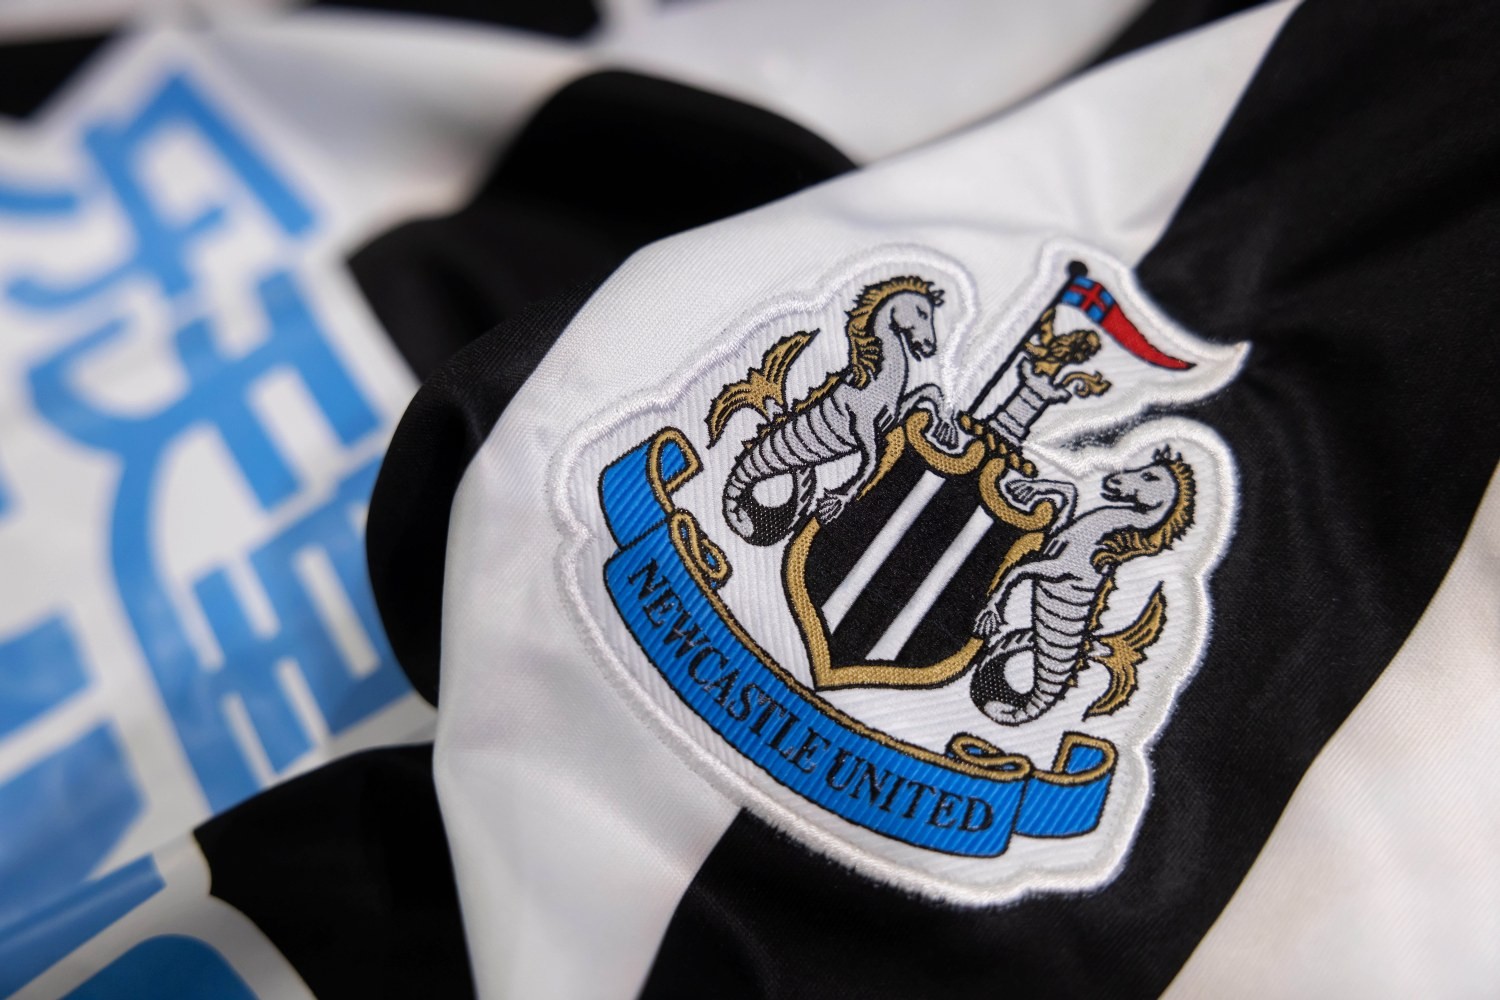 Newcastle United: Zmiana lidera w wyścigu o fotel menedżera?!